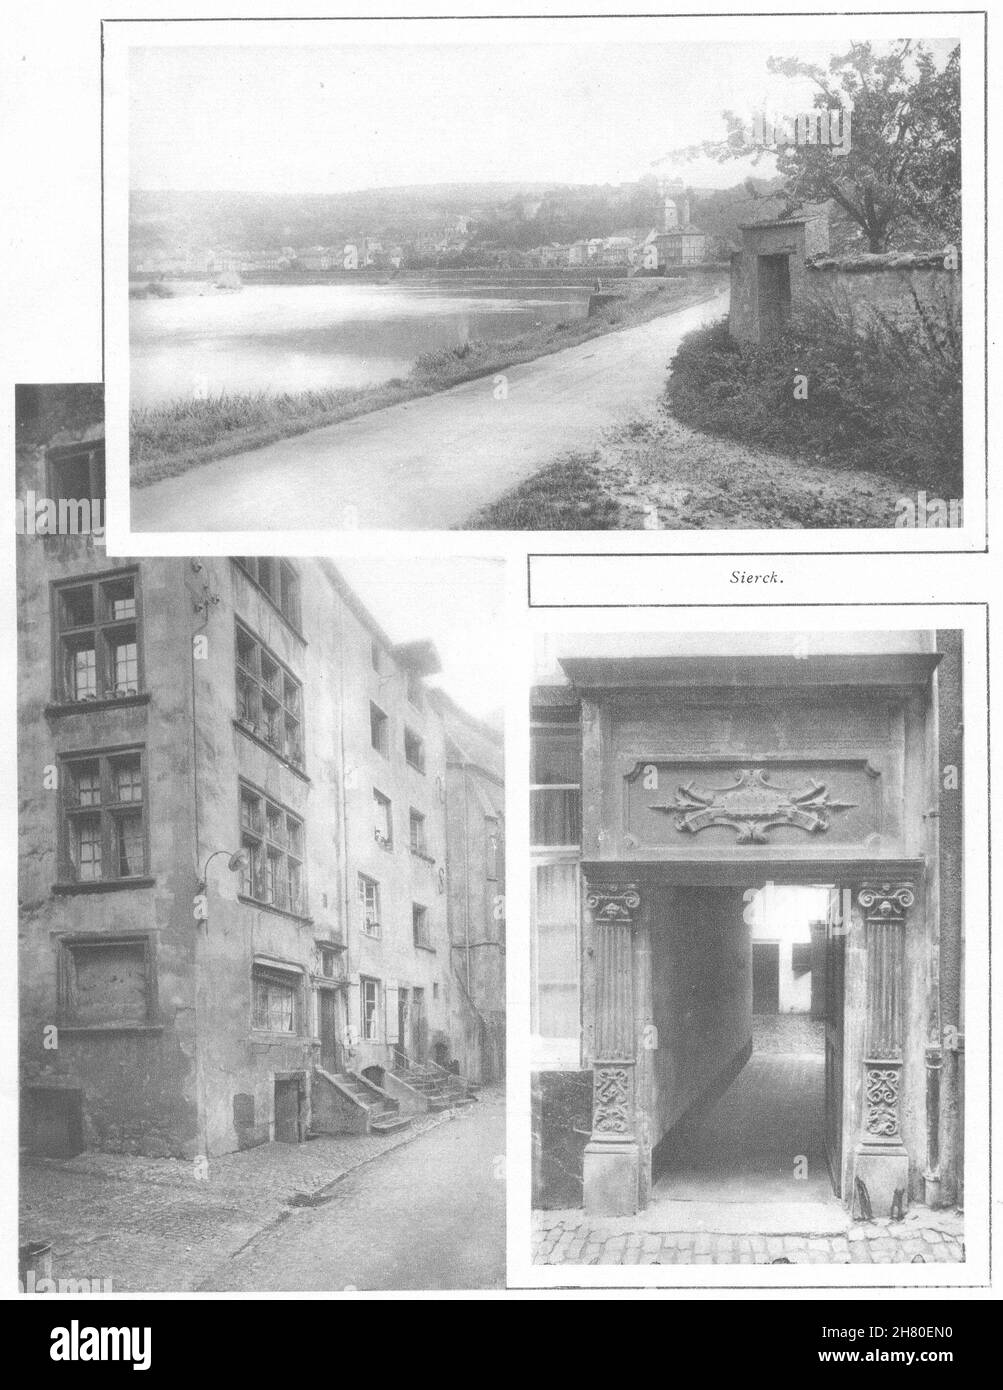 MOSELA. Sierck 1937 vieja foto vintage Foto de stock